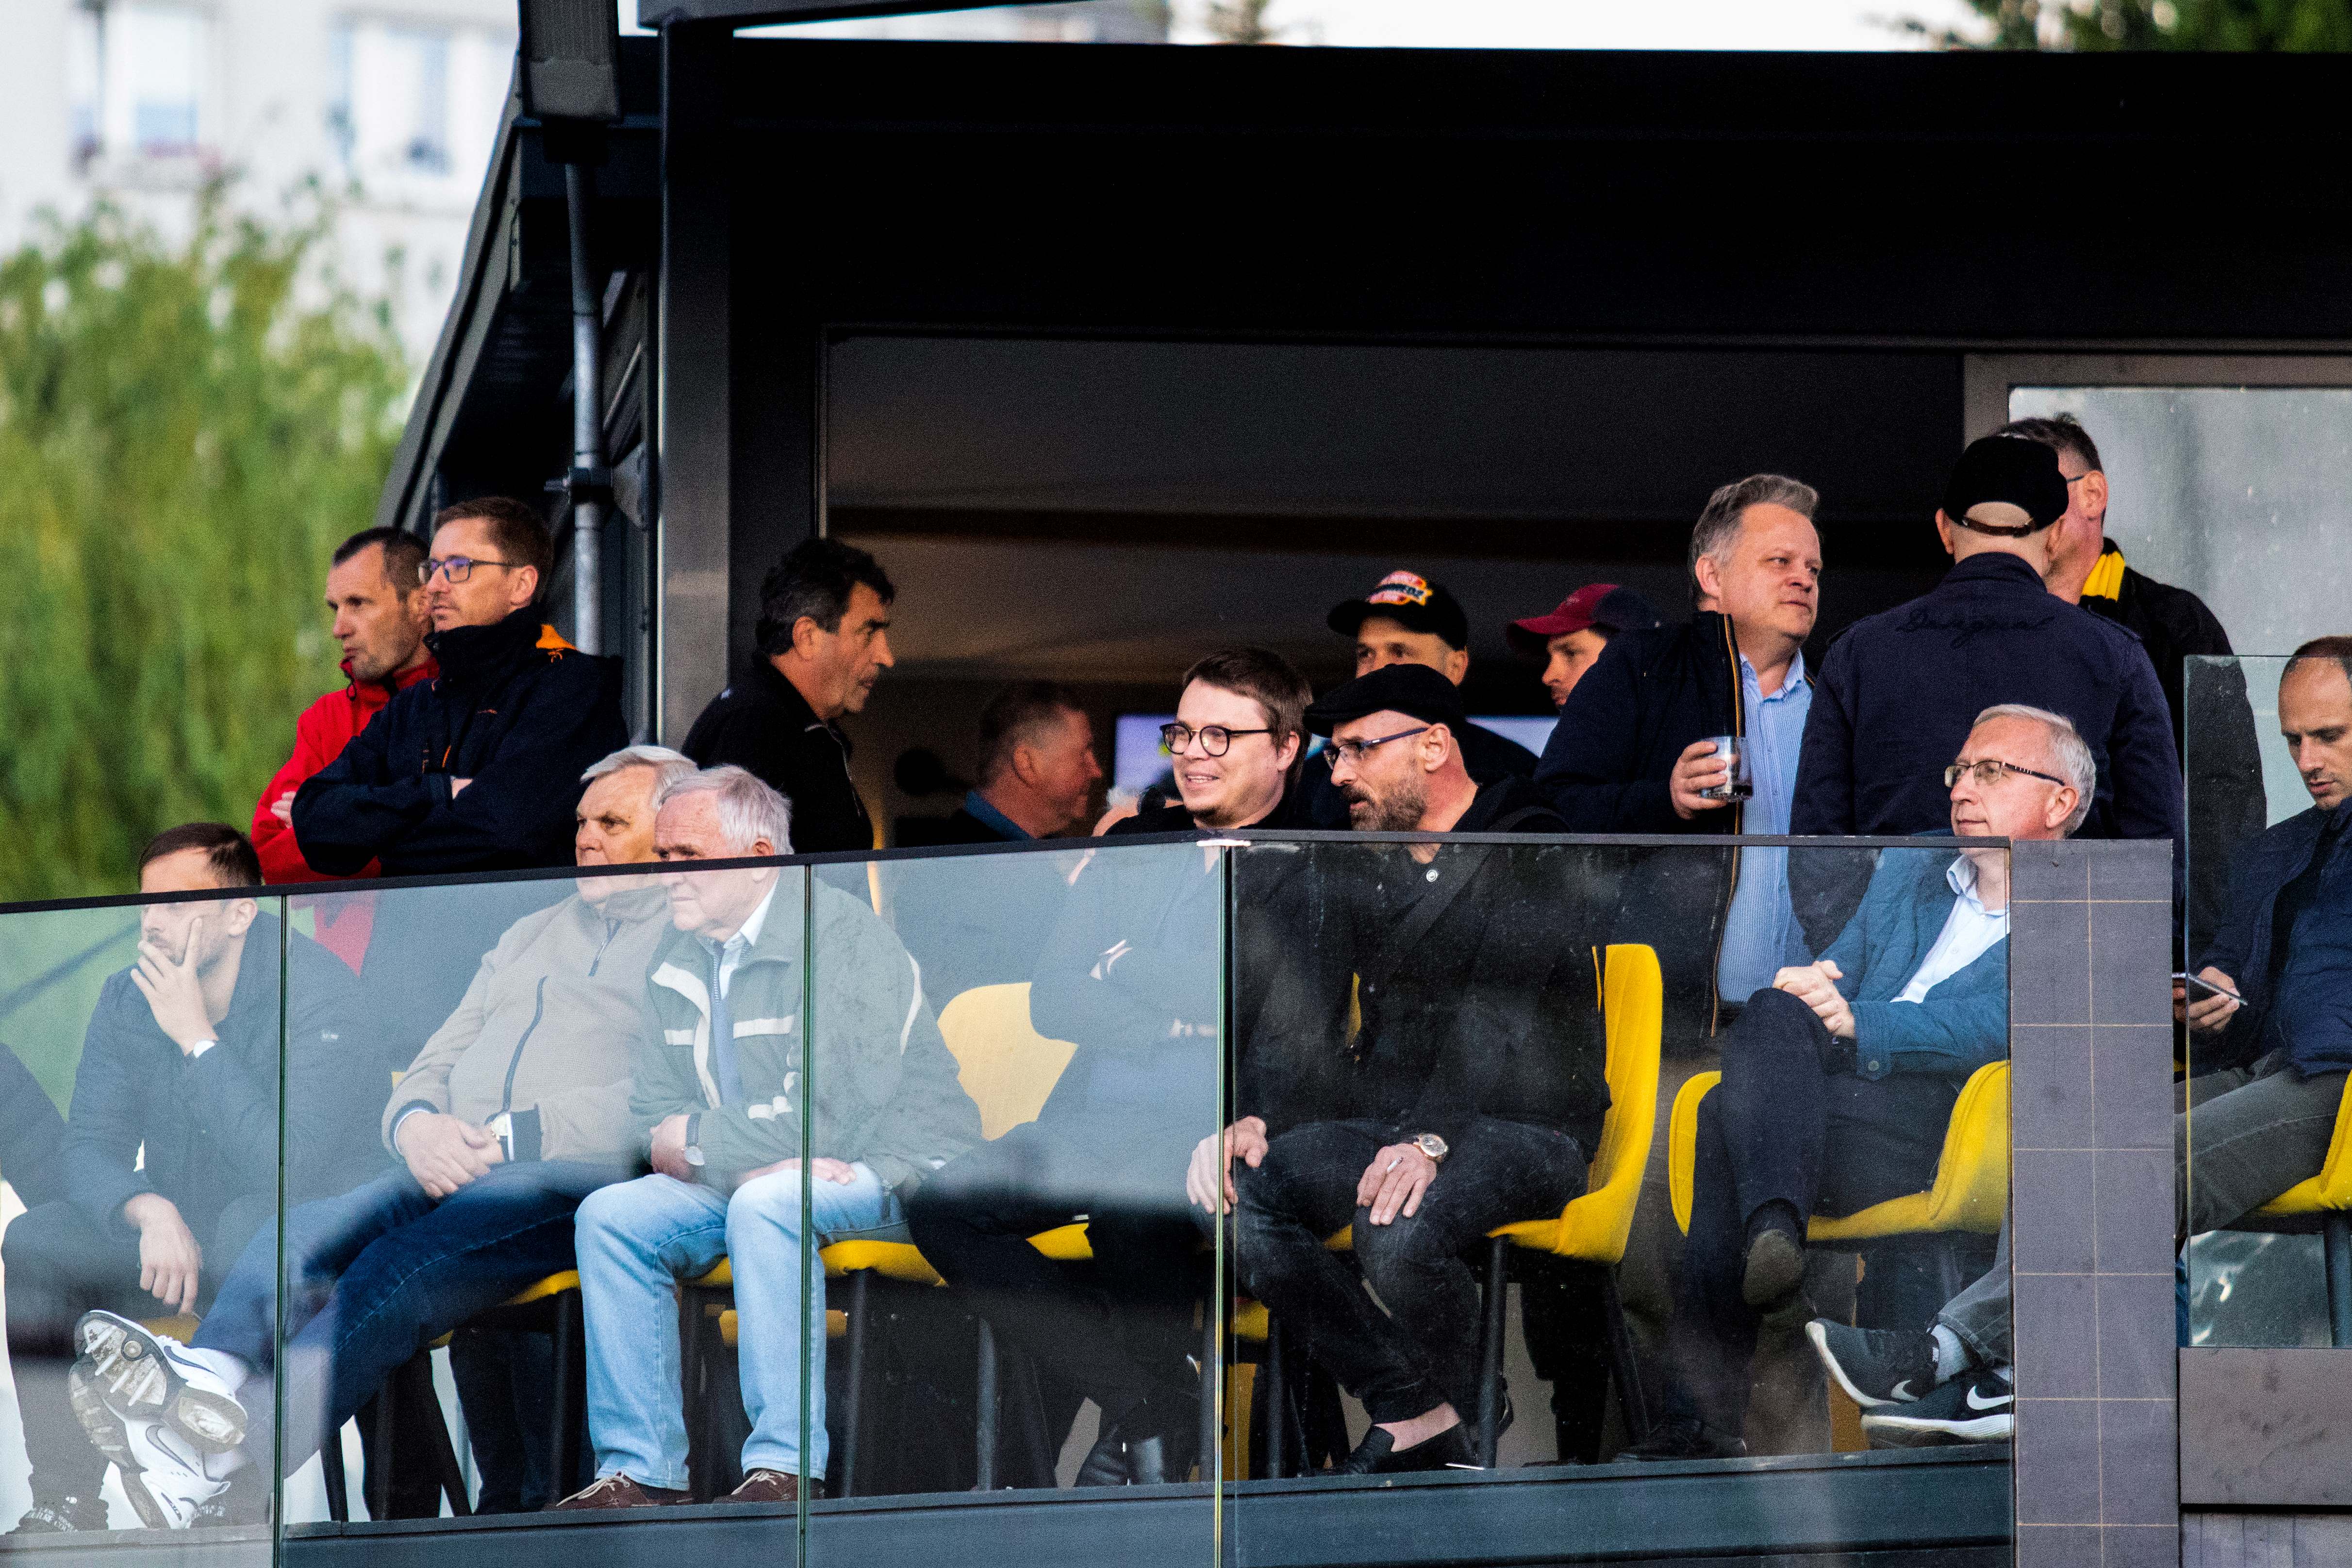 Wojciech Kwiecień (w dolnym rzędzie w kaszkiecie) ogląda mecz w towarzystwie Jarosława Królewskiego, prezesa Wisły